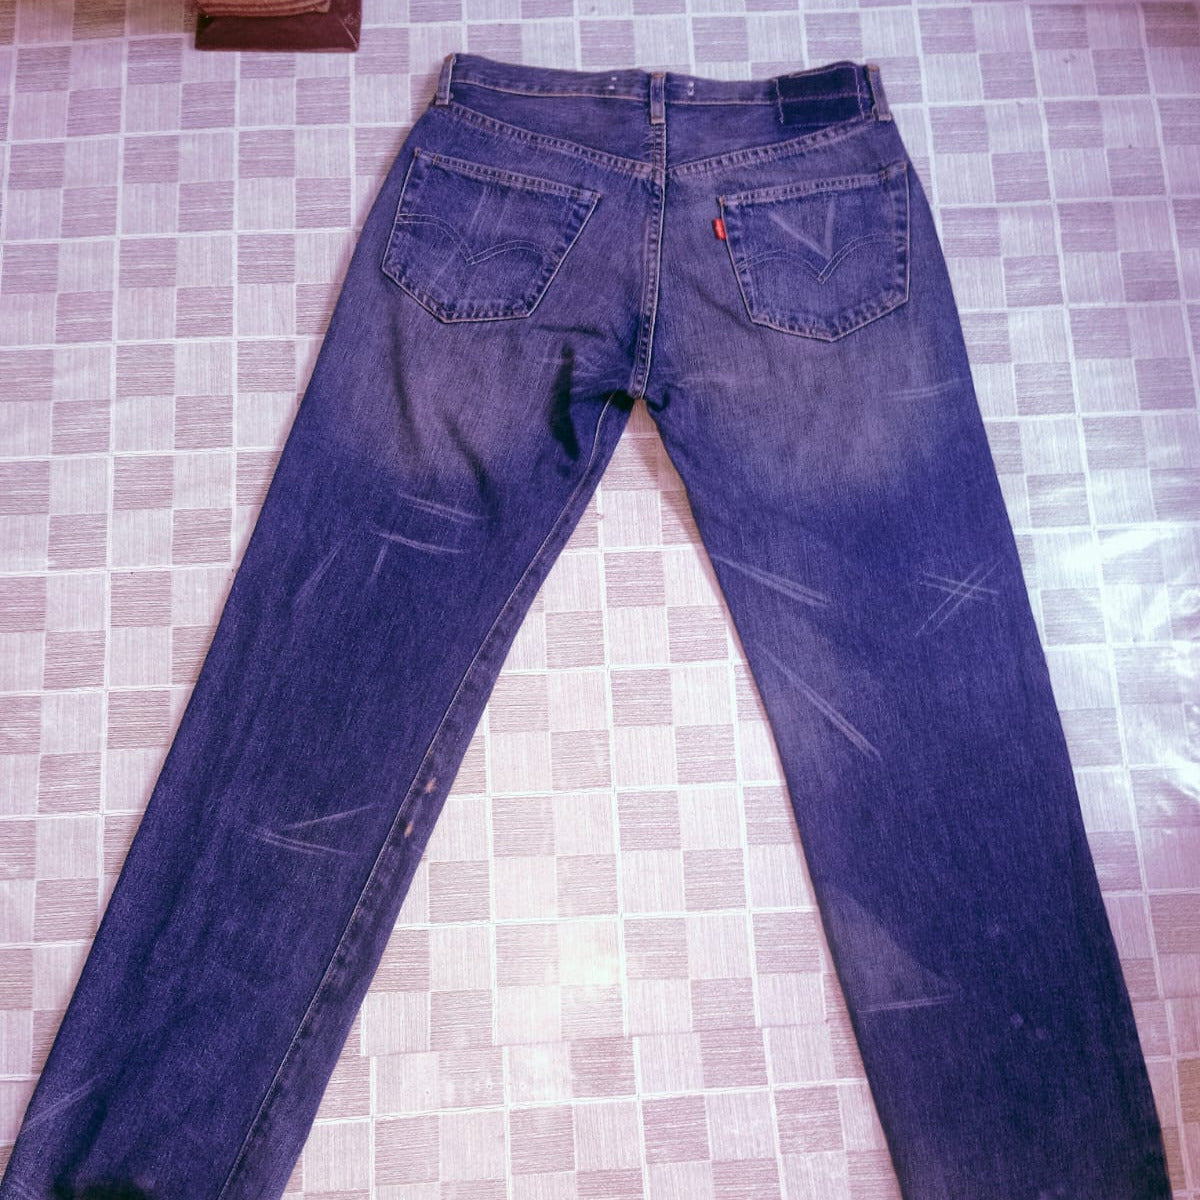 Baggy Jeans Bundle of 50 Pcs